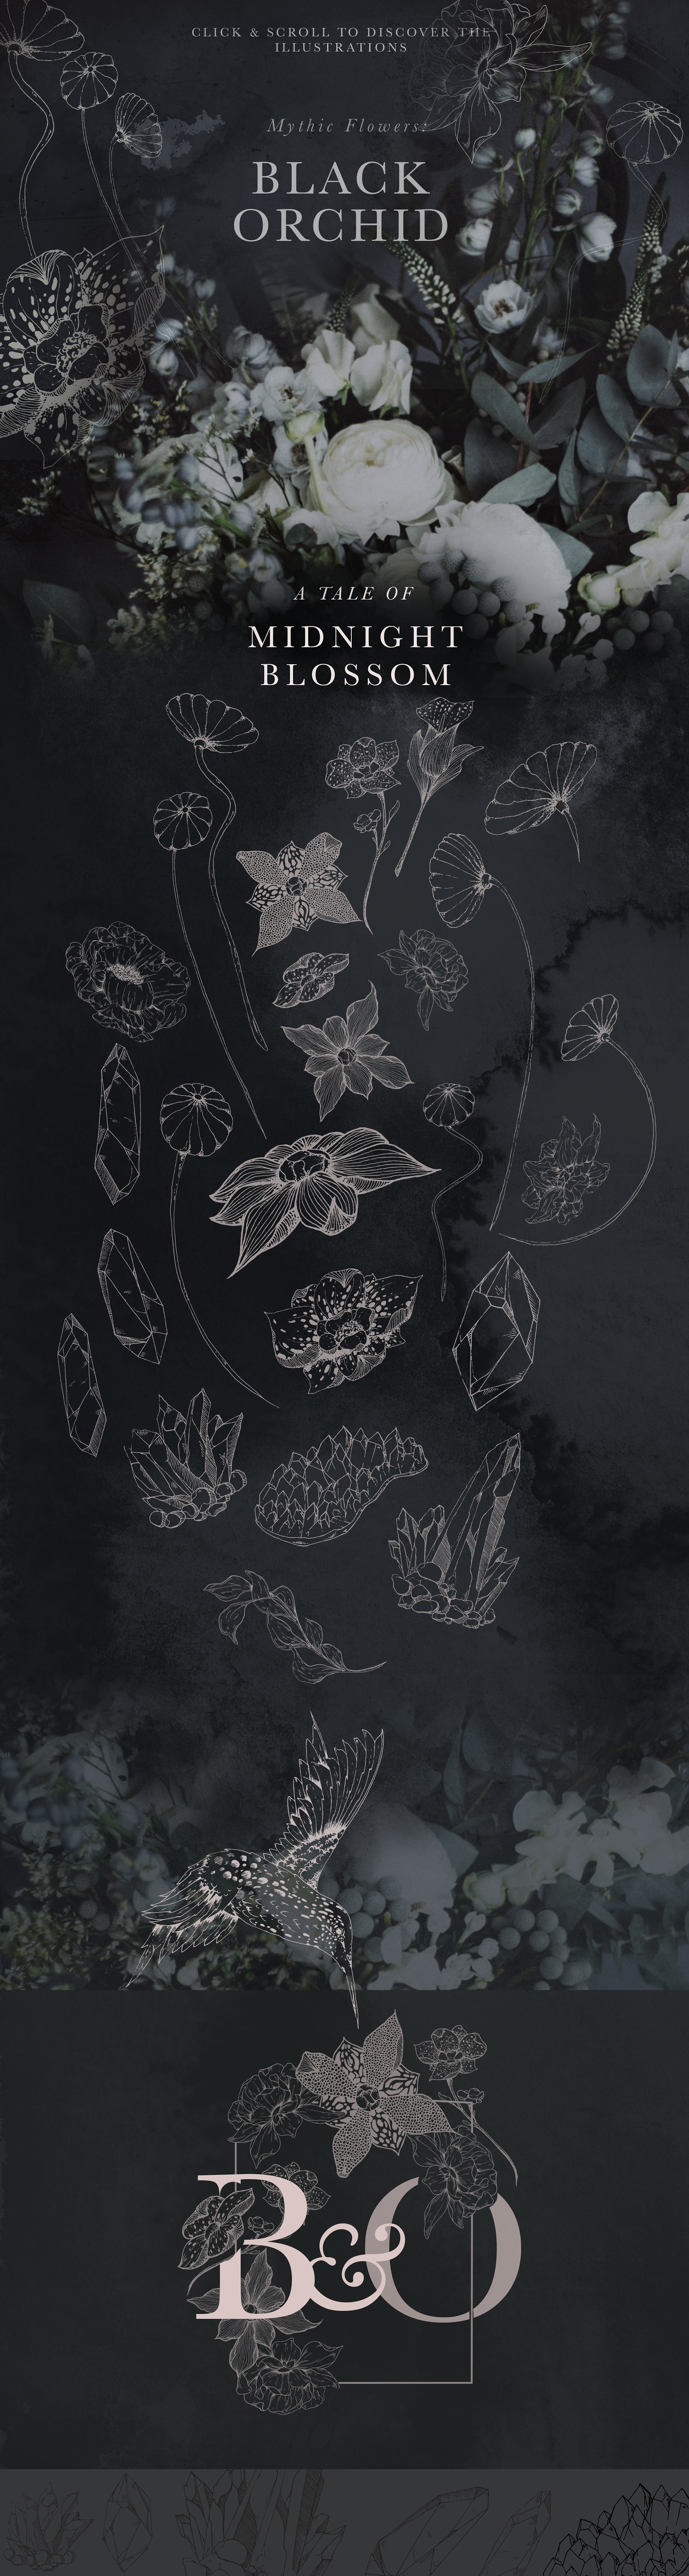 黑色兰花花卉设计素材Black Orchid Illustr